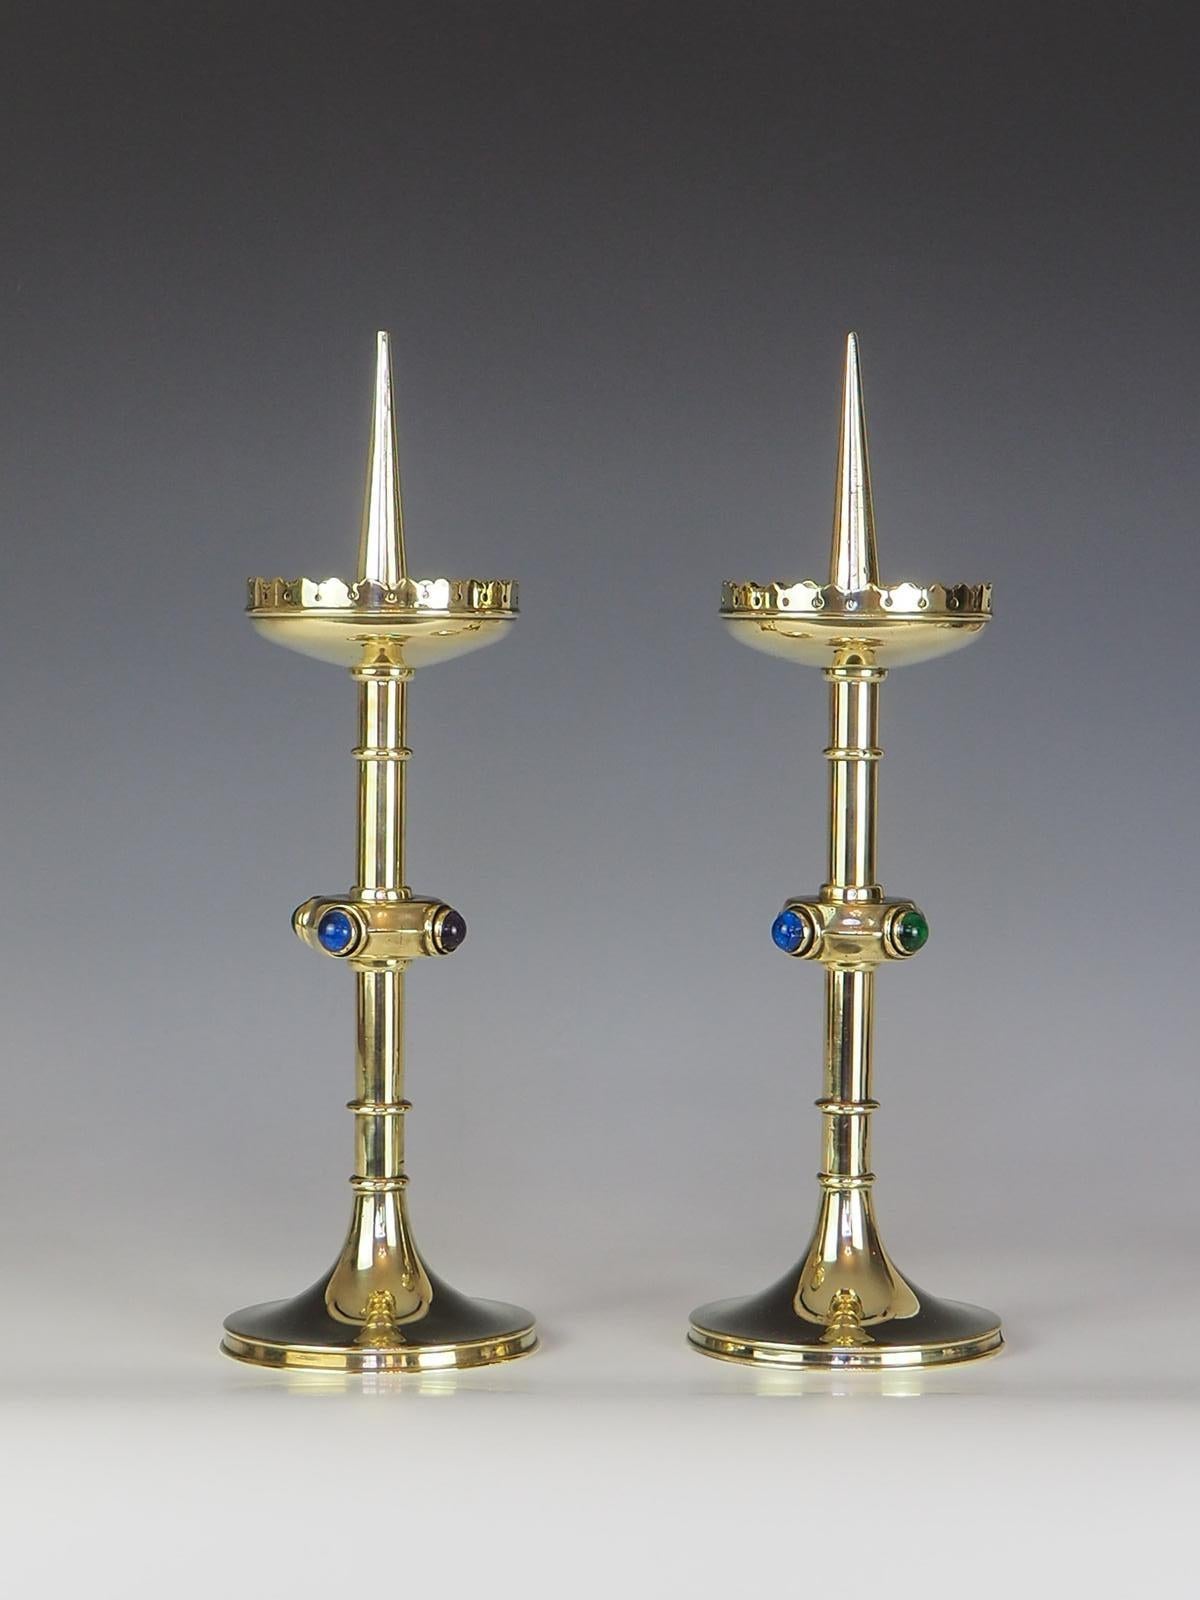 Paar Arts and Crafts-Kerzenhalter mit Halbedelsteinen im Cabochon-Schliff

Diese exquisiten Arts and Crafts-Kerzenhalter sind eine perfekte Ergänzung für jedes Zuhause. Diese mit äußerster Präzision und Liebe zum Detail gefertigten Kerzenhalter sind